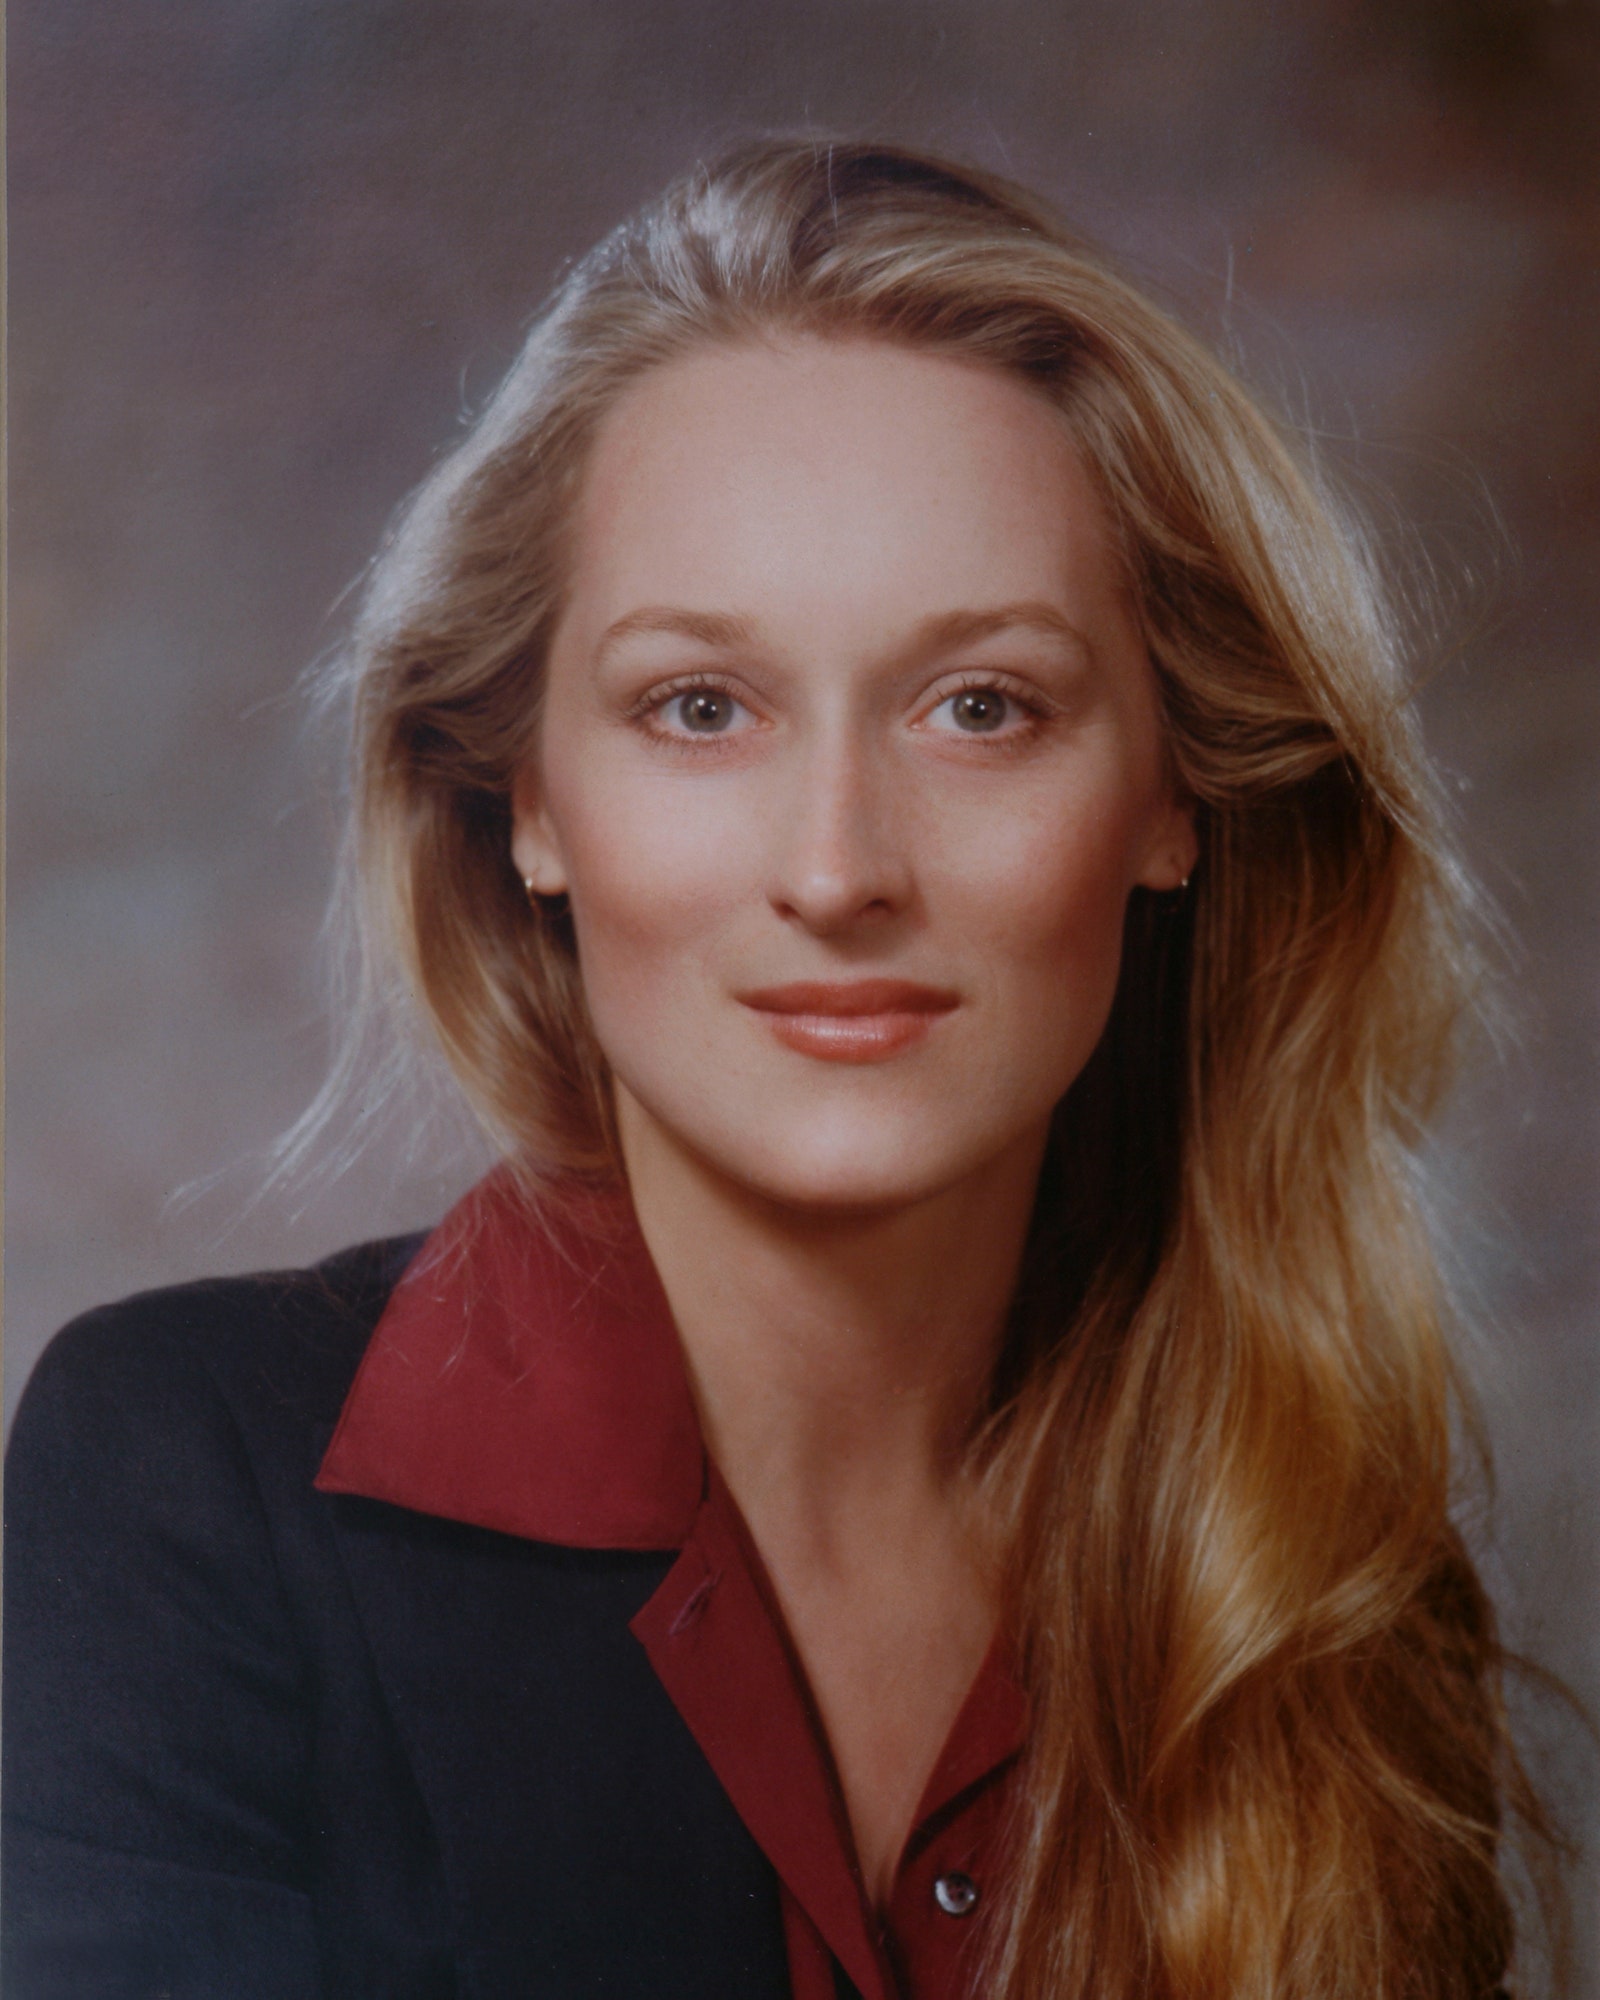 Meryl Streep'in Zamansız Güzelliği